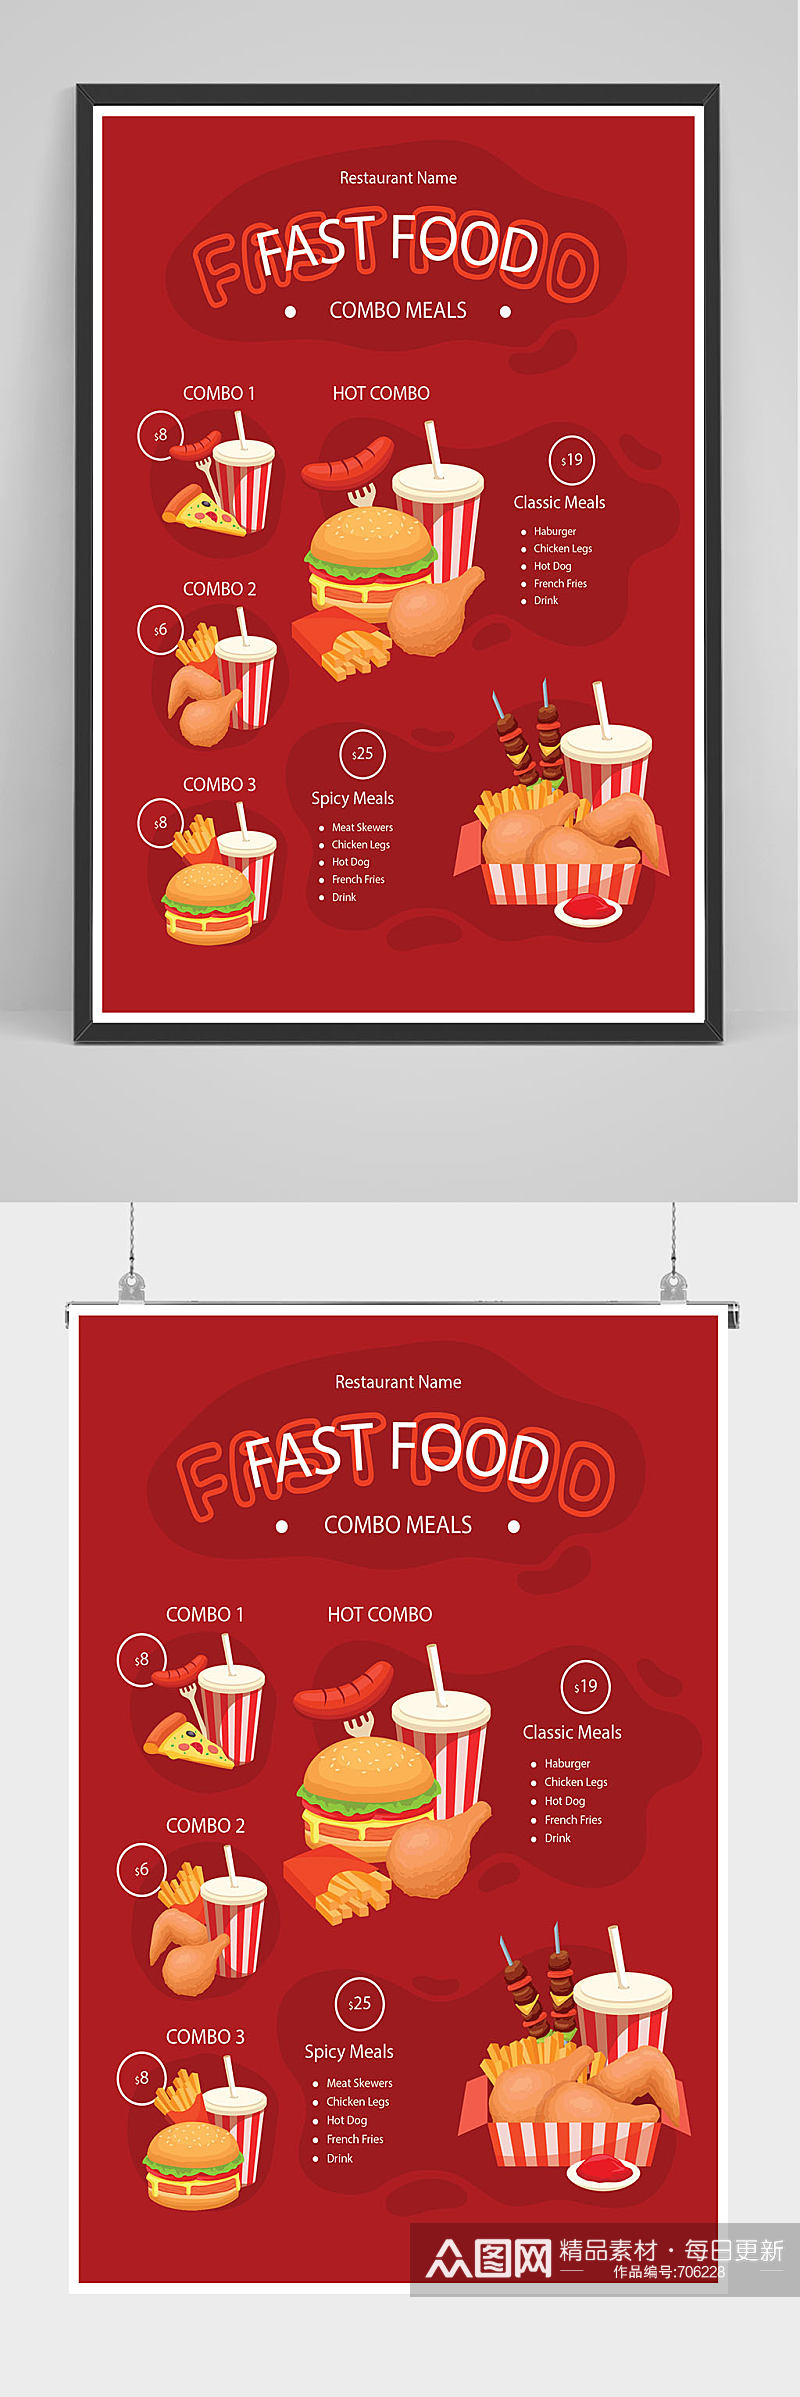 红色汉堡薯条可乐海报设计素材